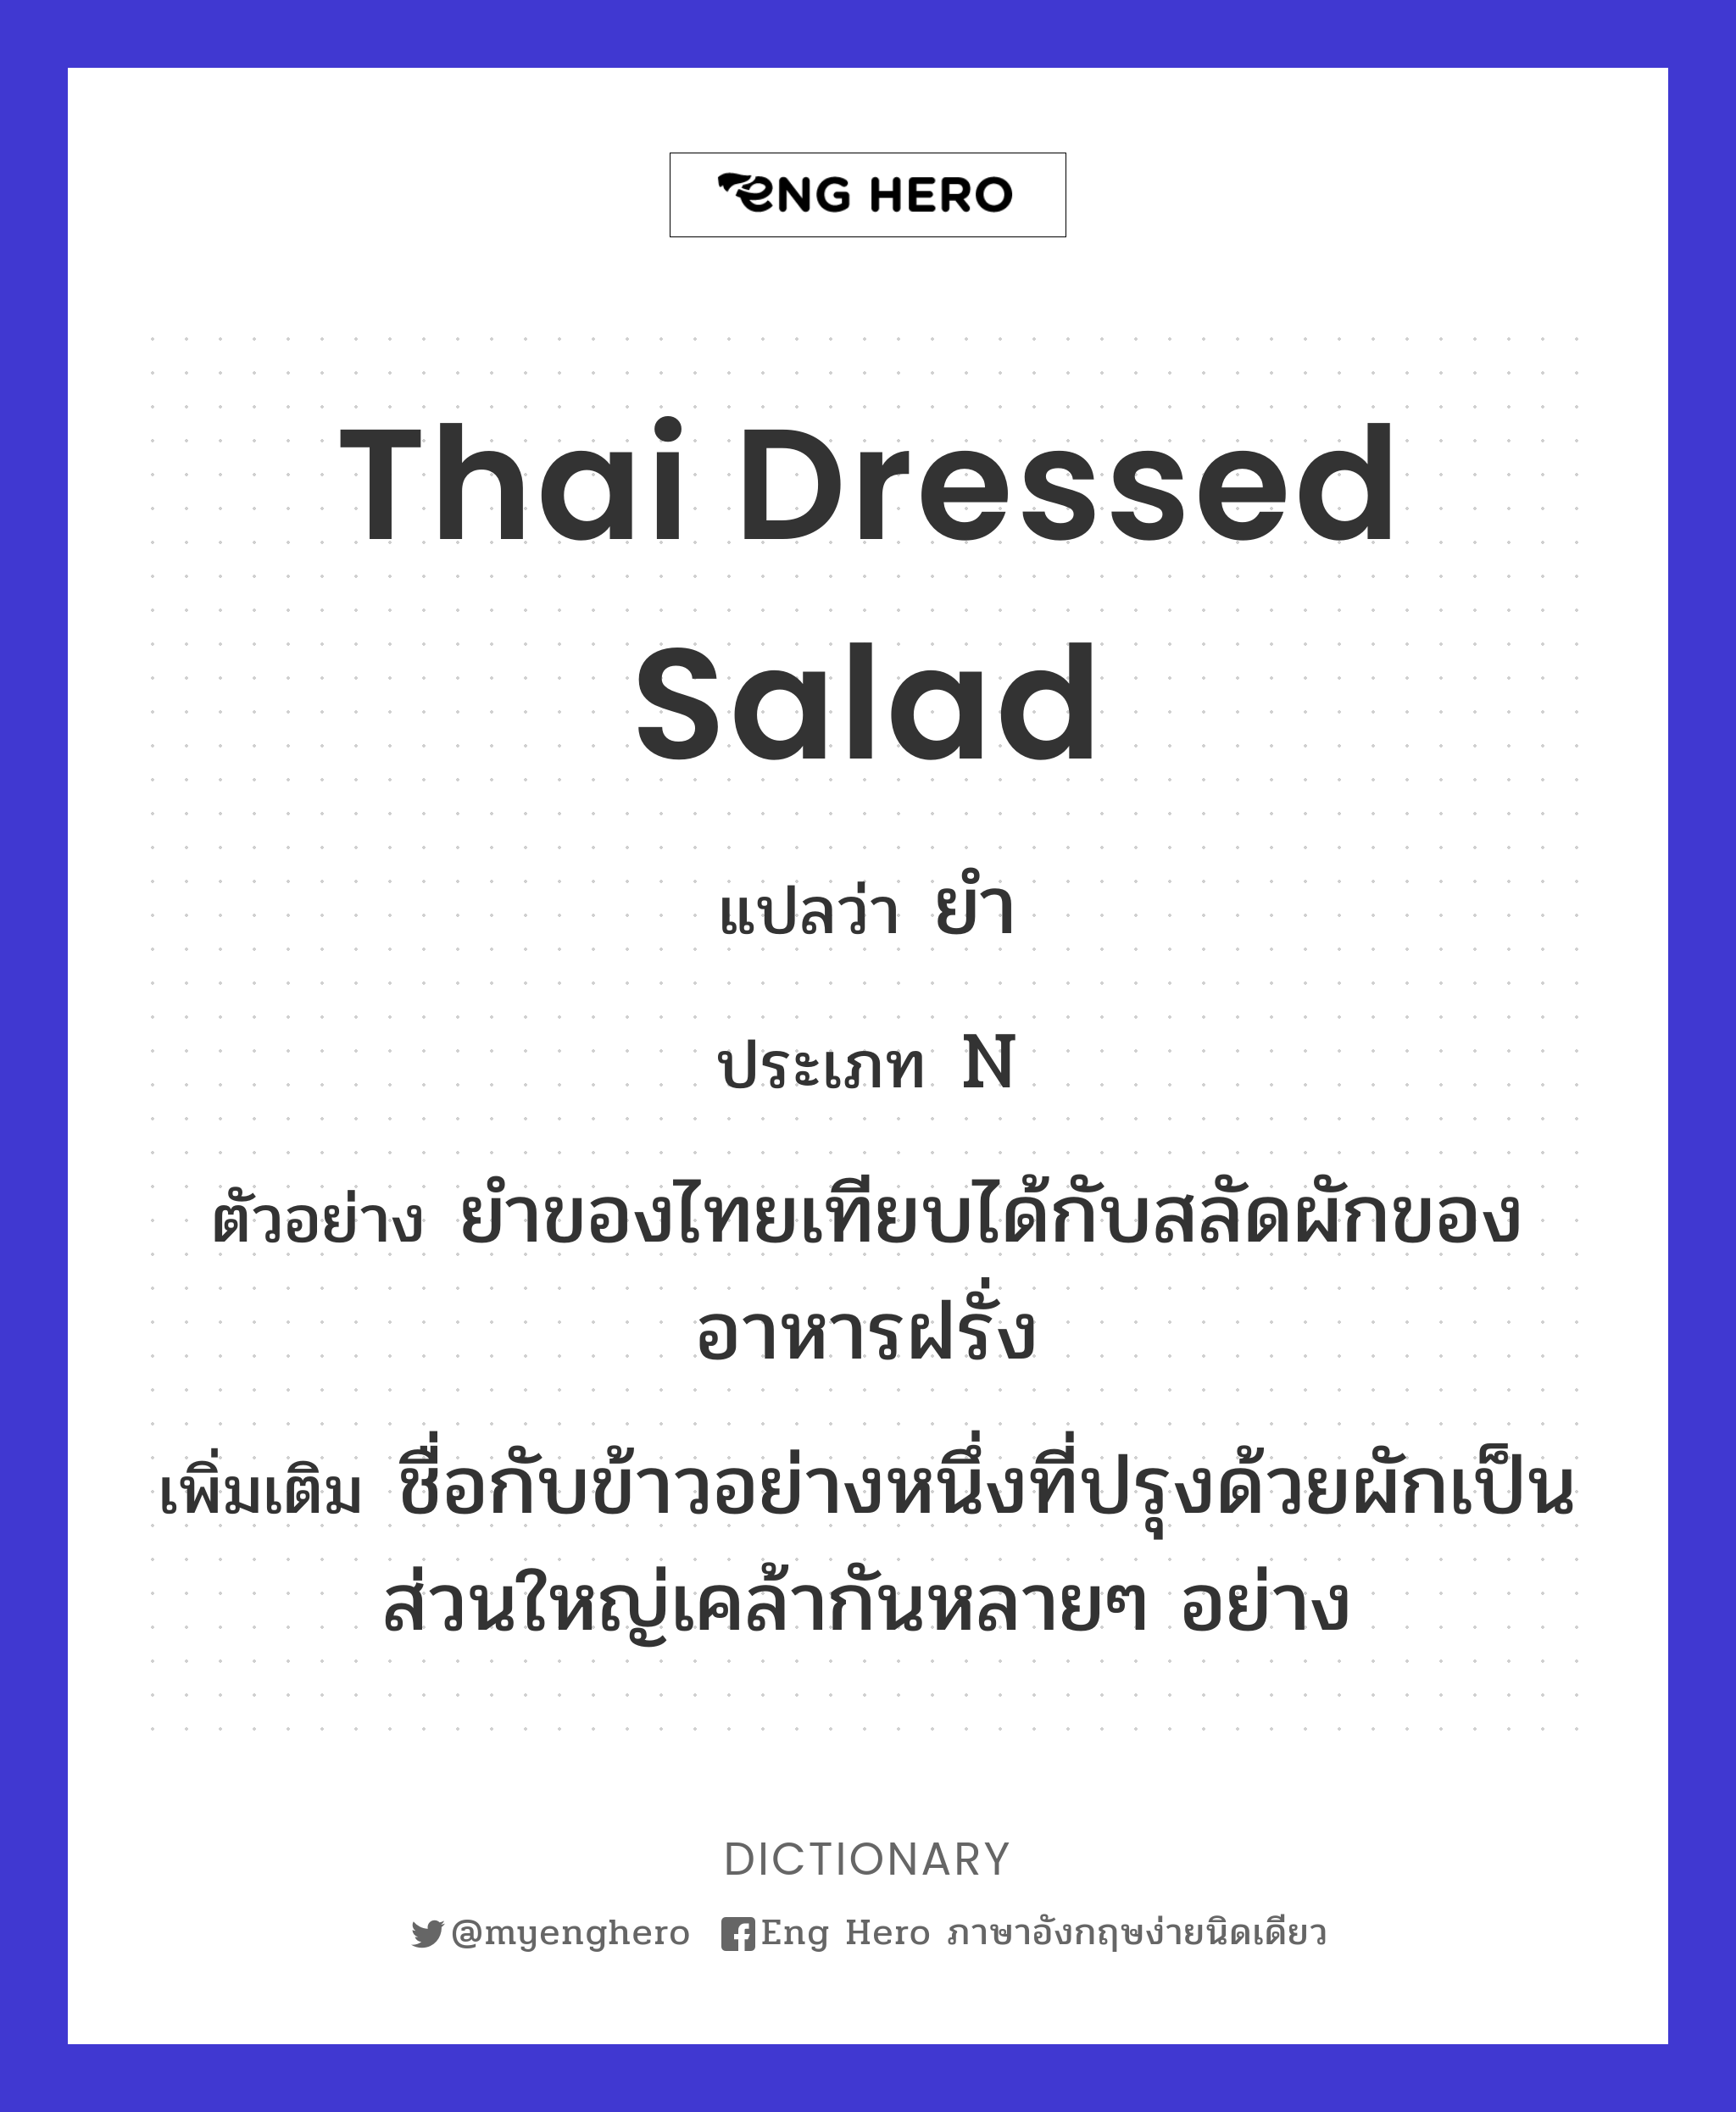 Thai dressed salad